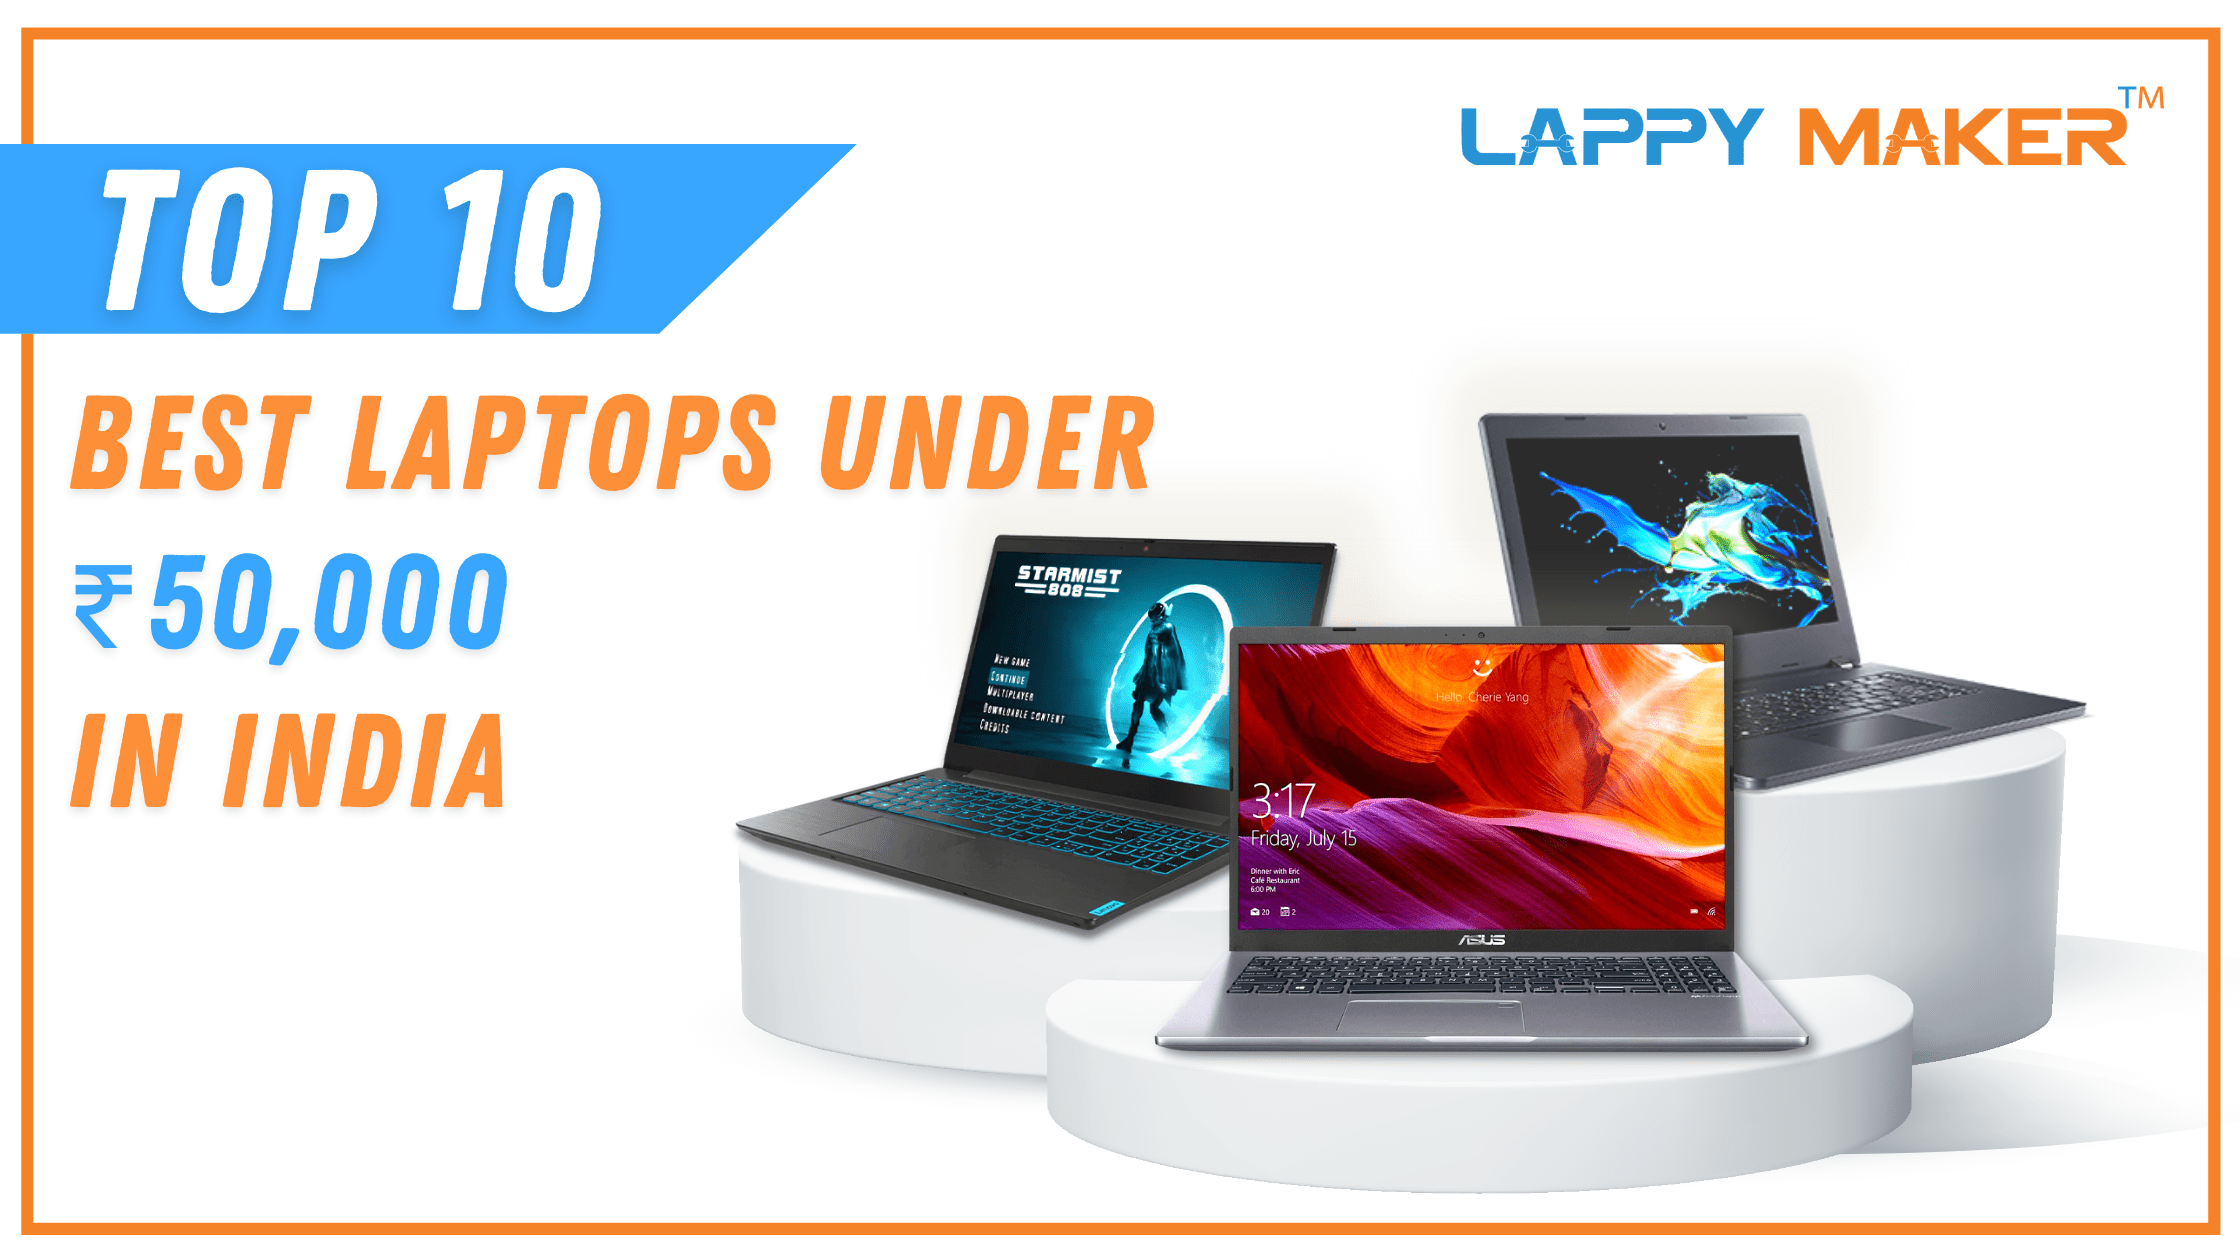 Top 10 Best Laptops Under ₹50,000 in India (October 2021)